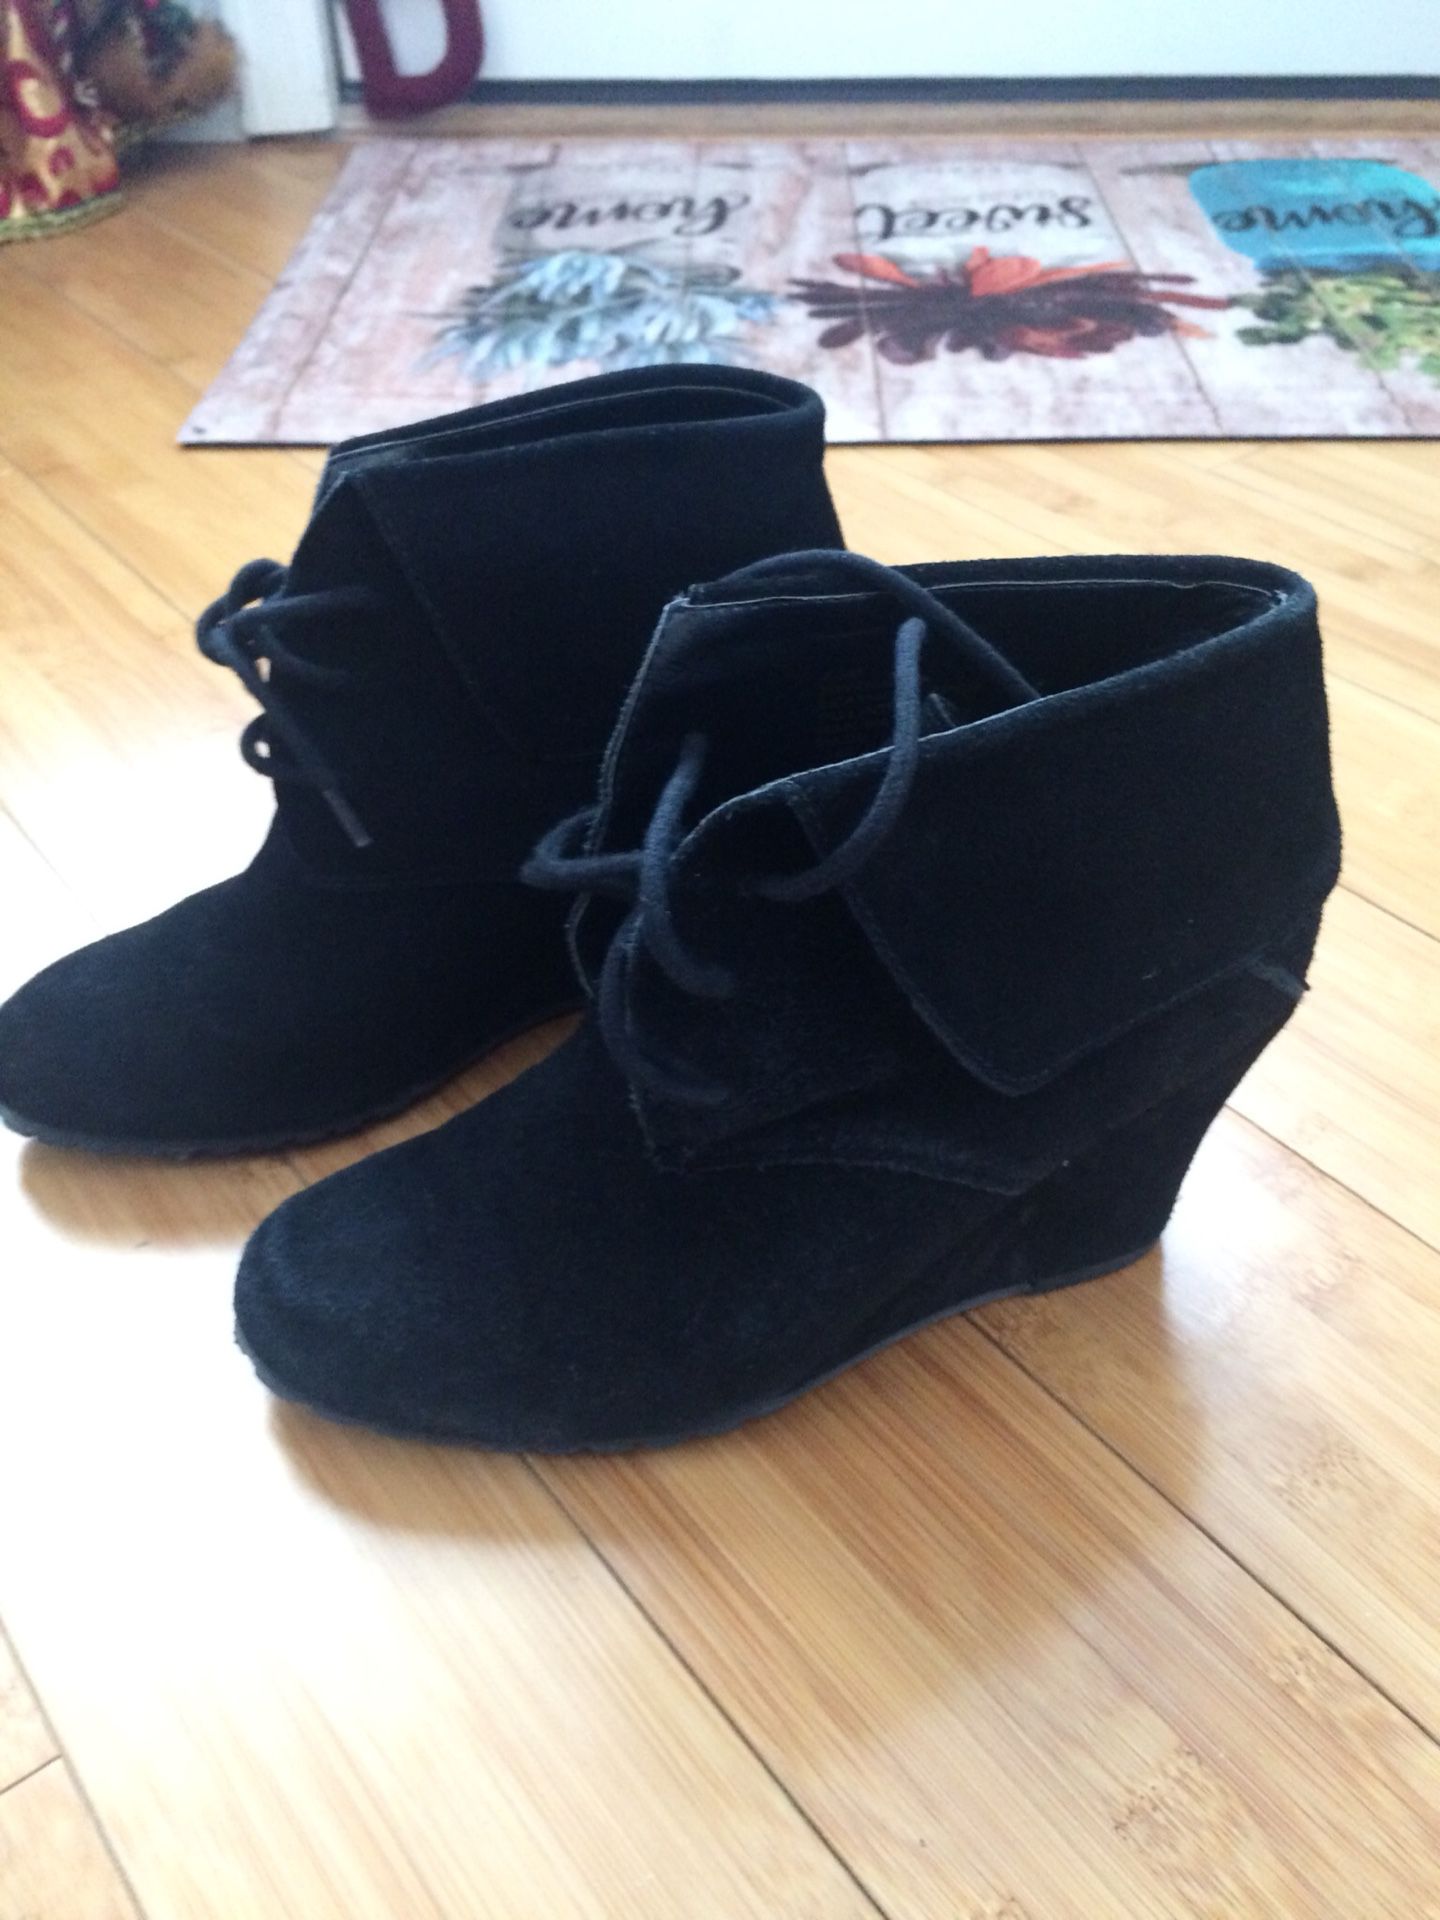 Cute Nine West black booties - Like New!